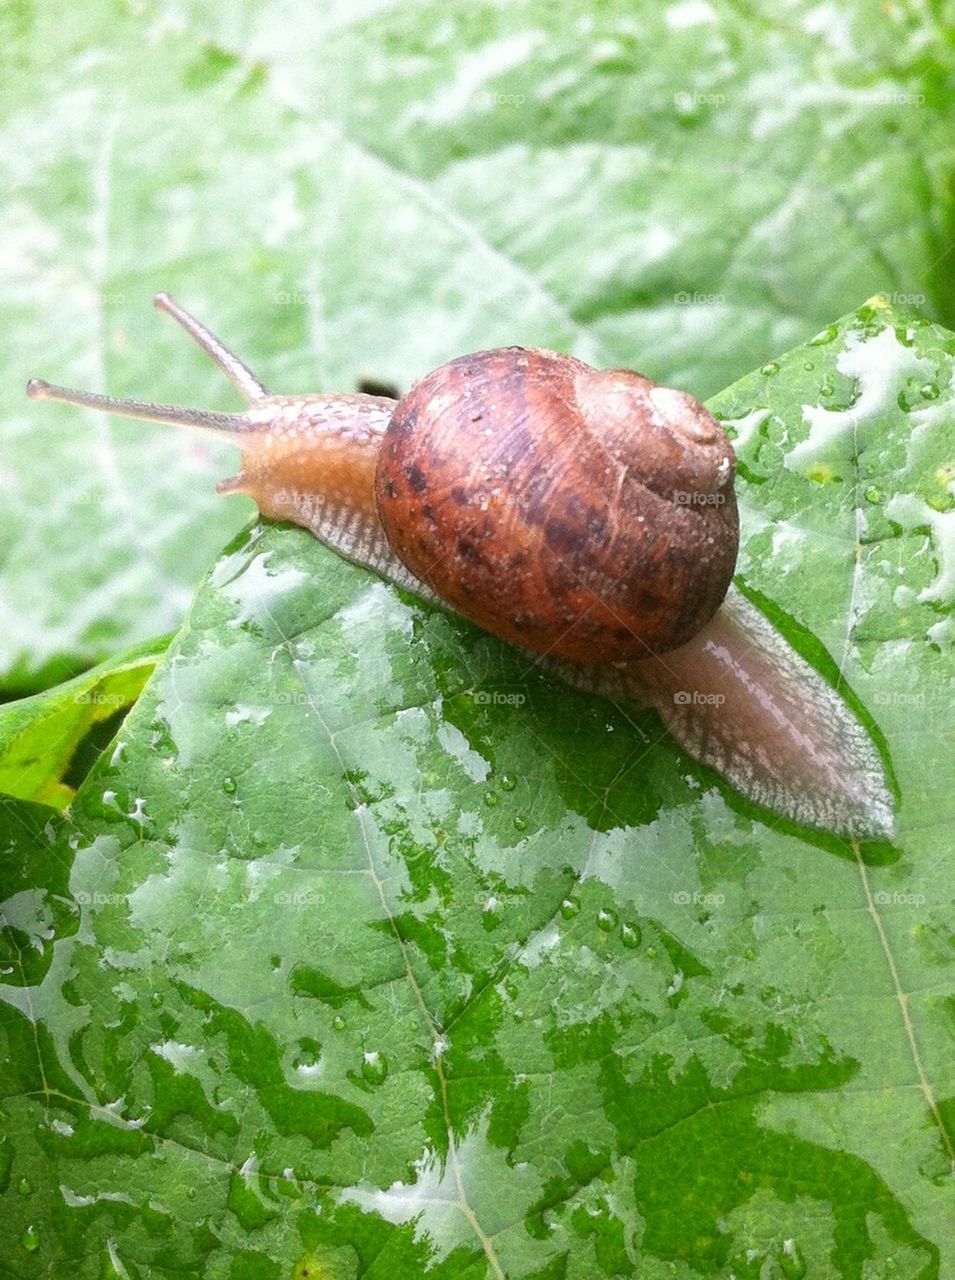 European snail